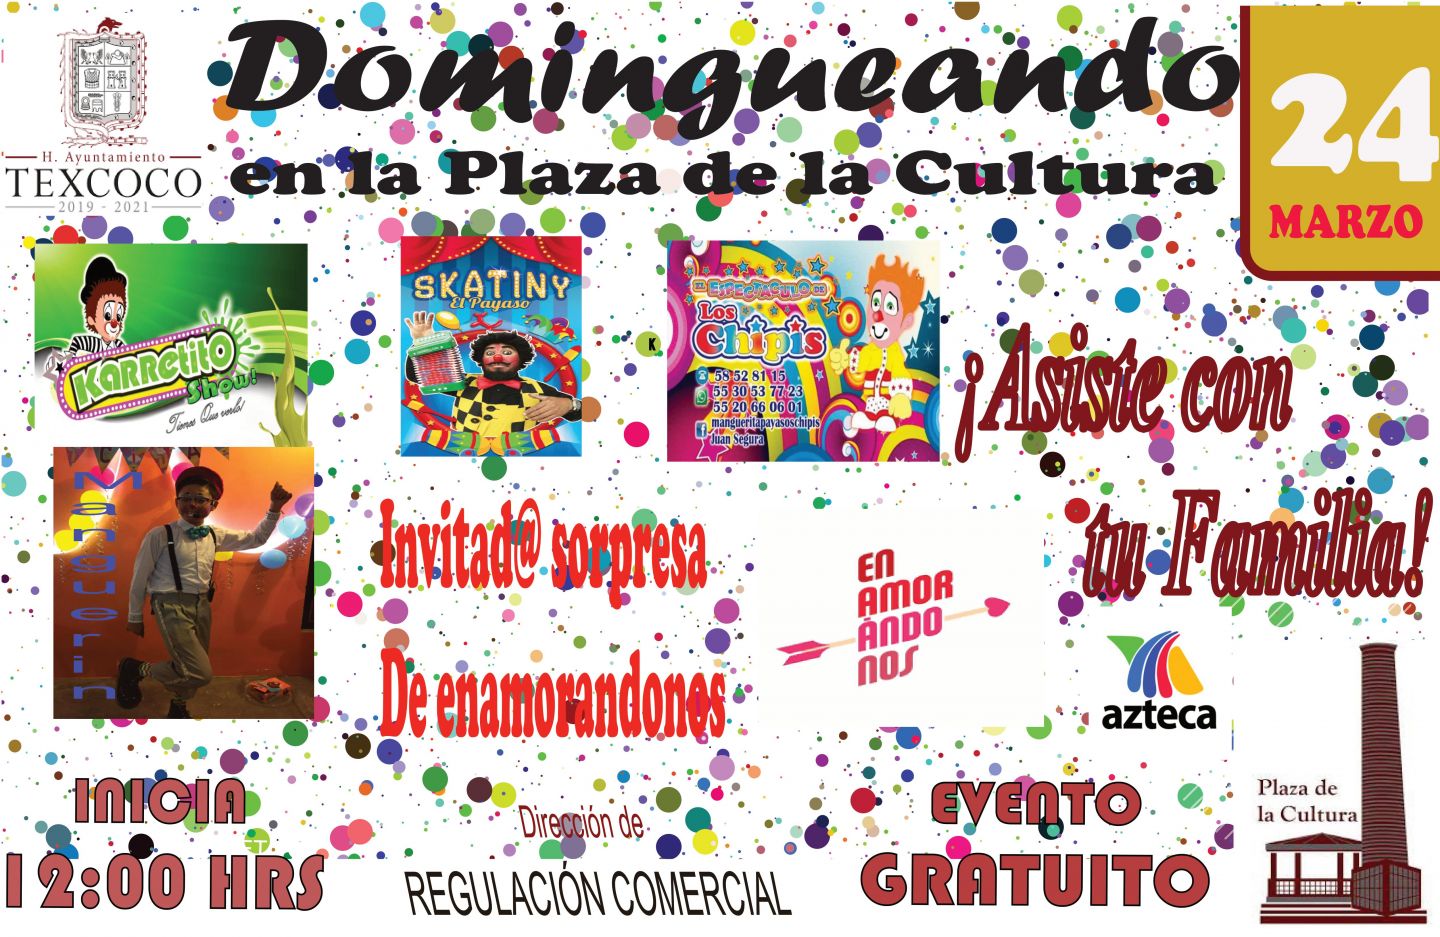 La Plaza de la Cultura Invita a todo el publico en general al evento "Dominguenando en la Plaza de la Cultura" que se llevara acabo el dia 24 de Marzo. Invitados especial